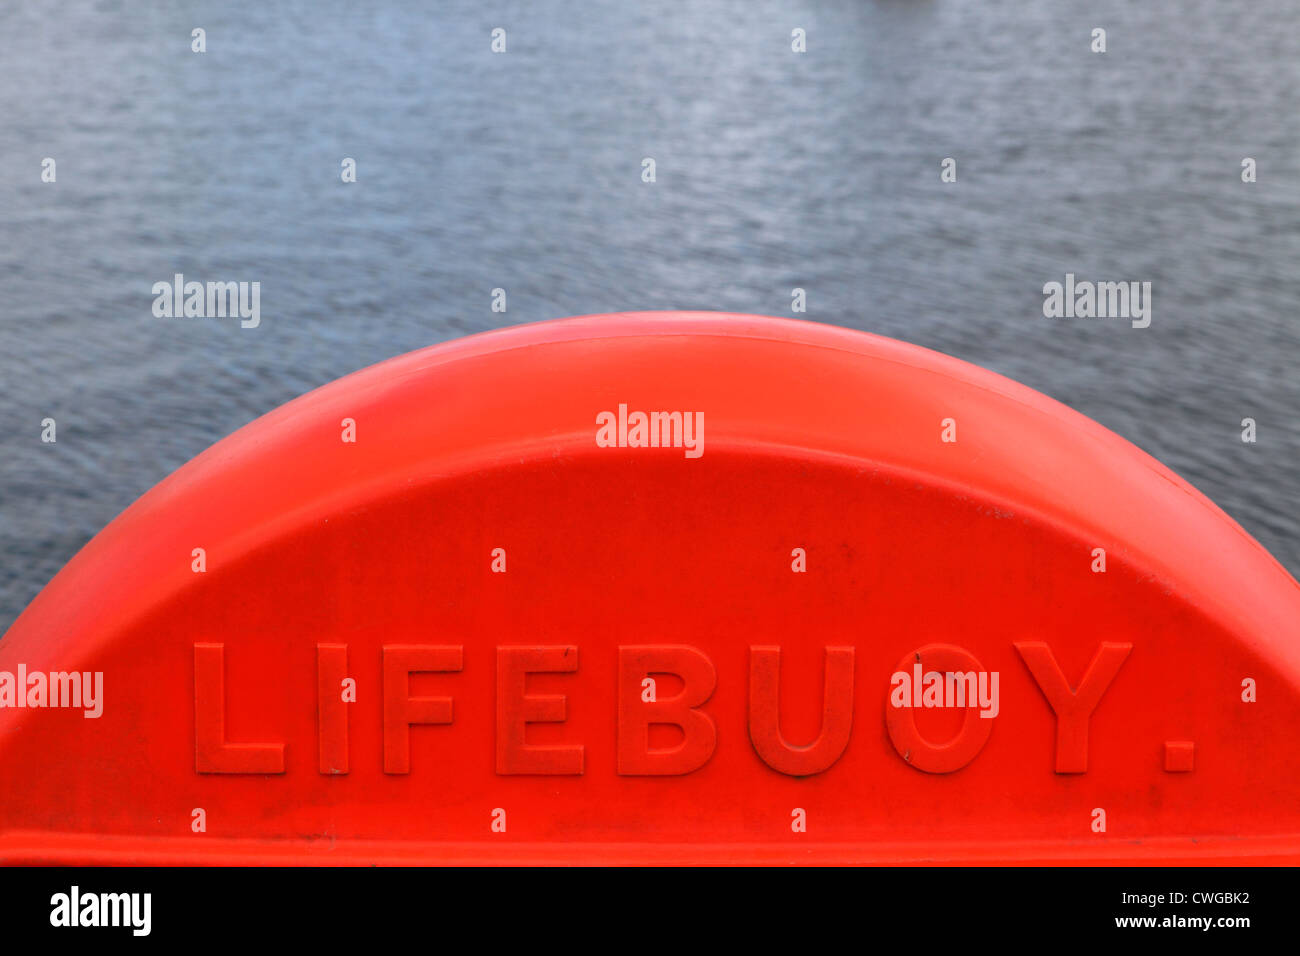 Leuchtend orange rot Rettungsring Plastikbehälter an Uferpromenade mit ruhigen Meer hinter. Leuchtend bunte, Sicherheitsausrüstung, Cornwall, UK Stockfoto